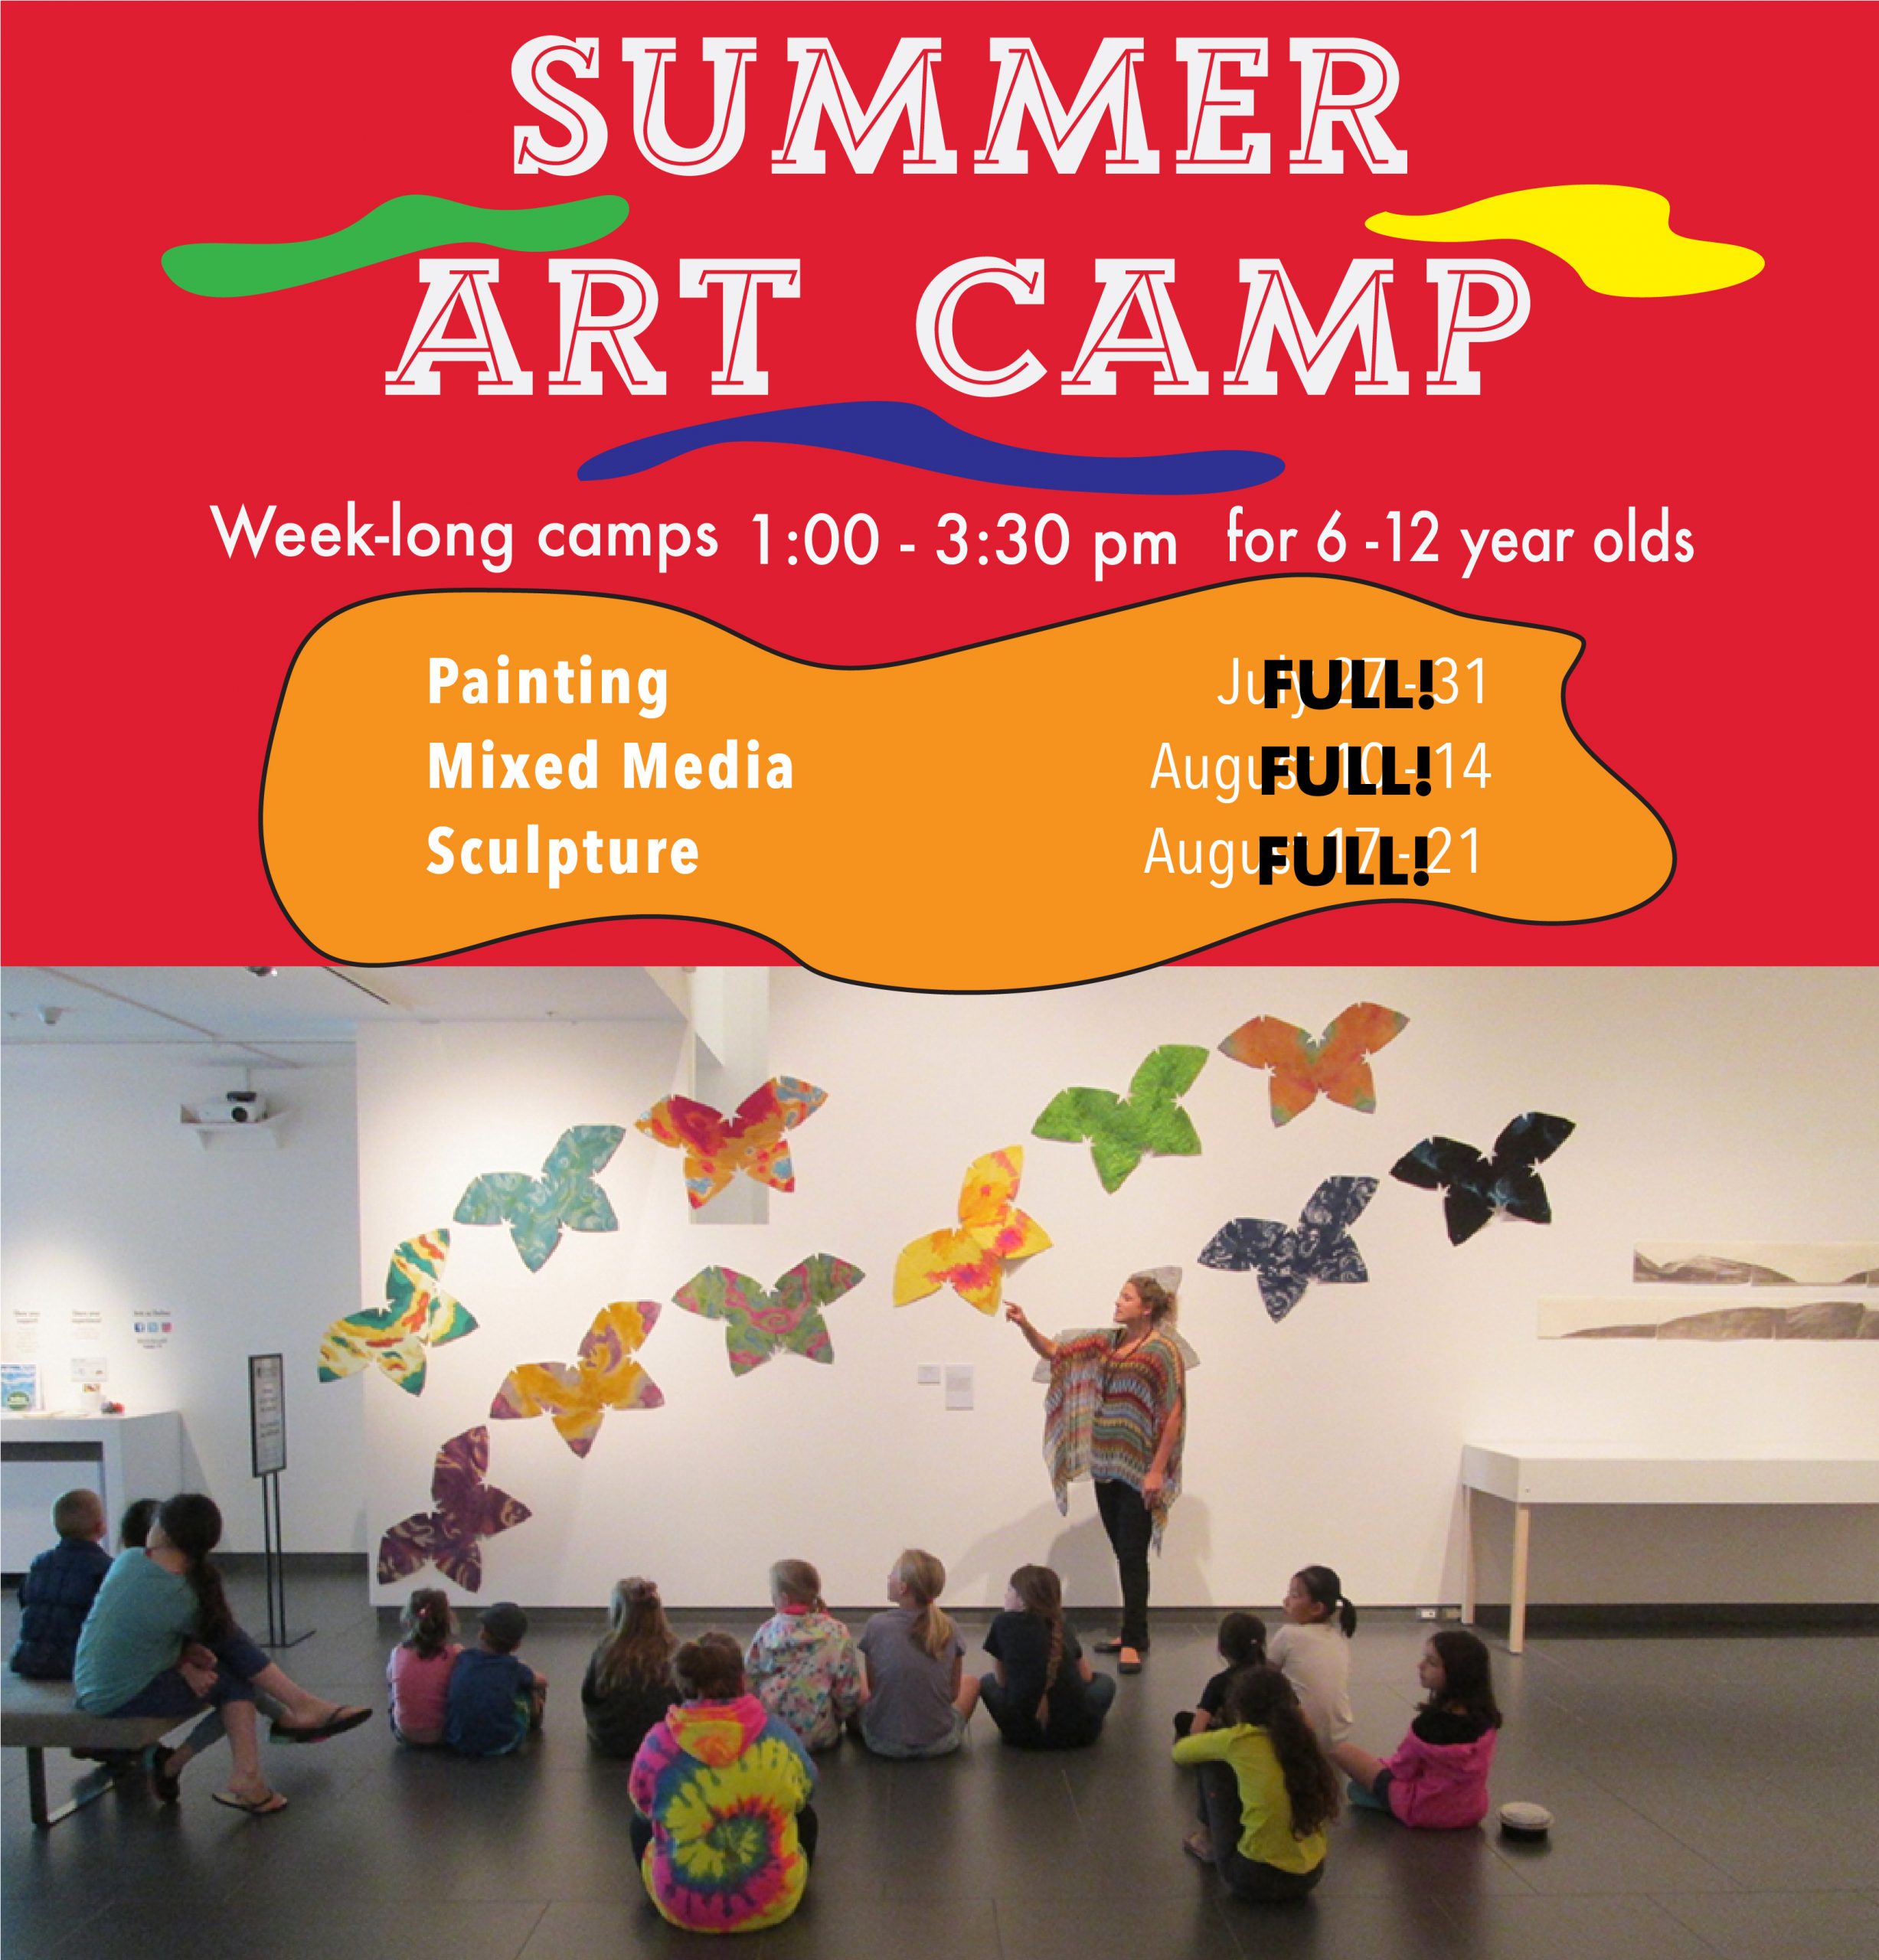 Summer Art Camp Promo Image2 Scaled 